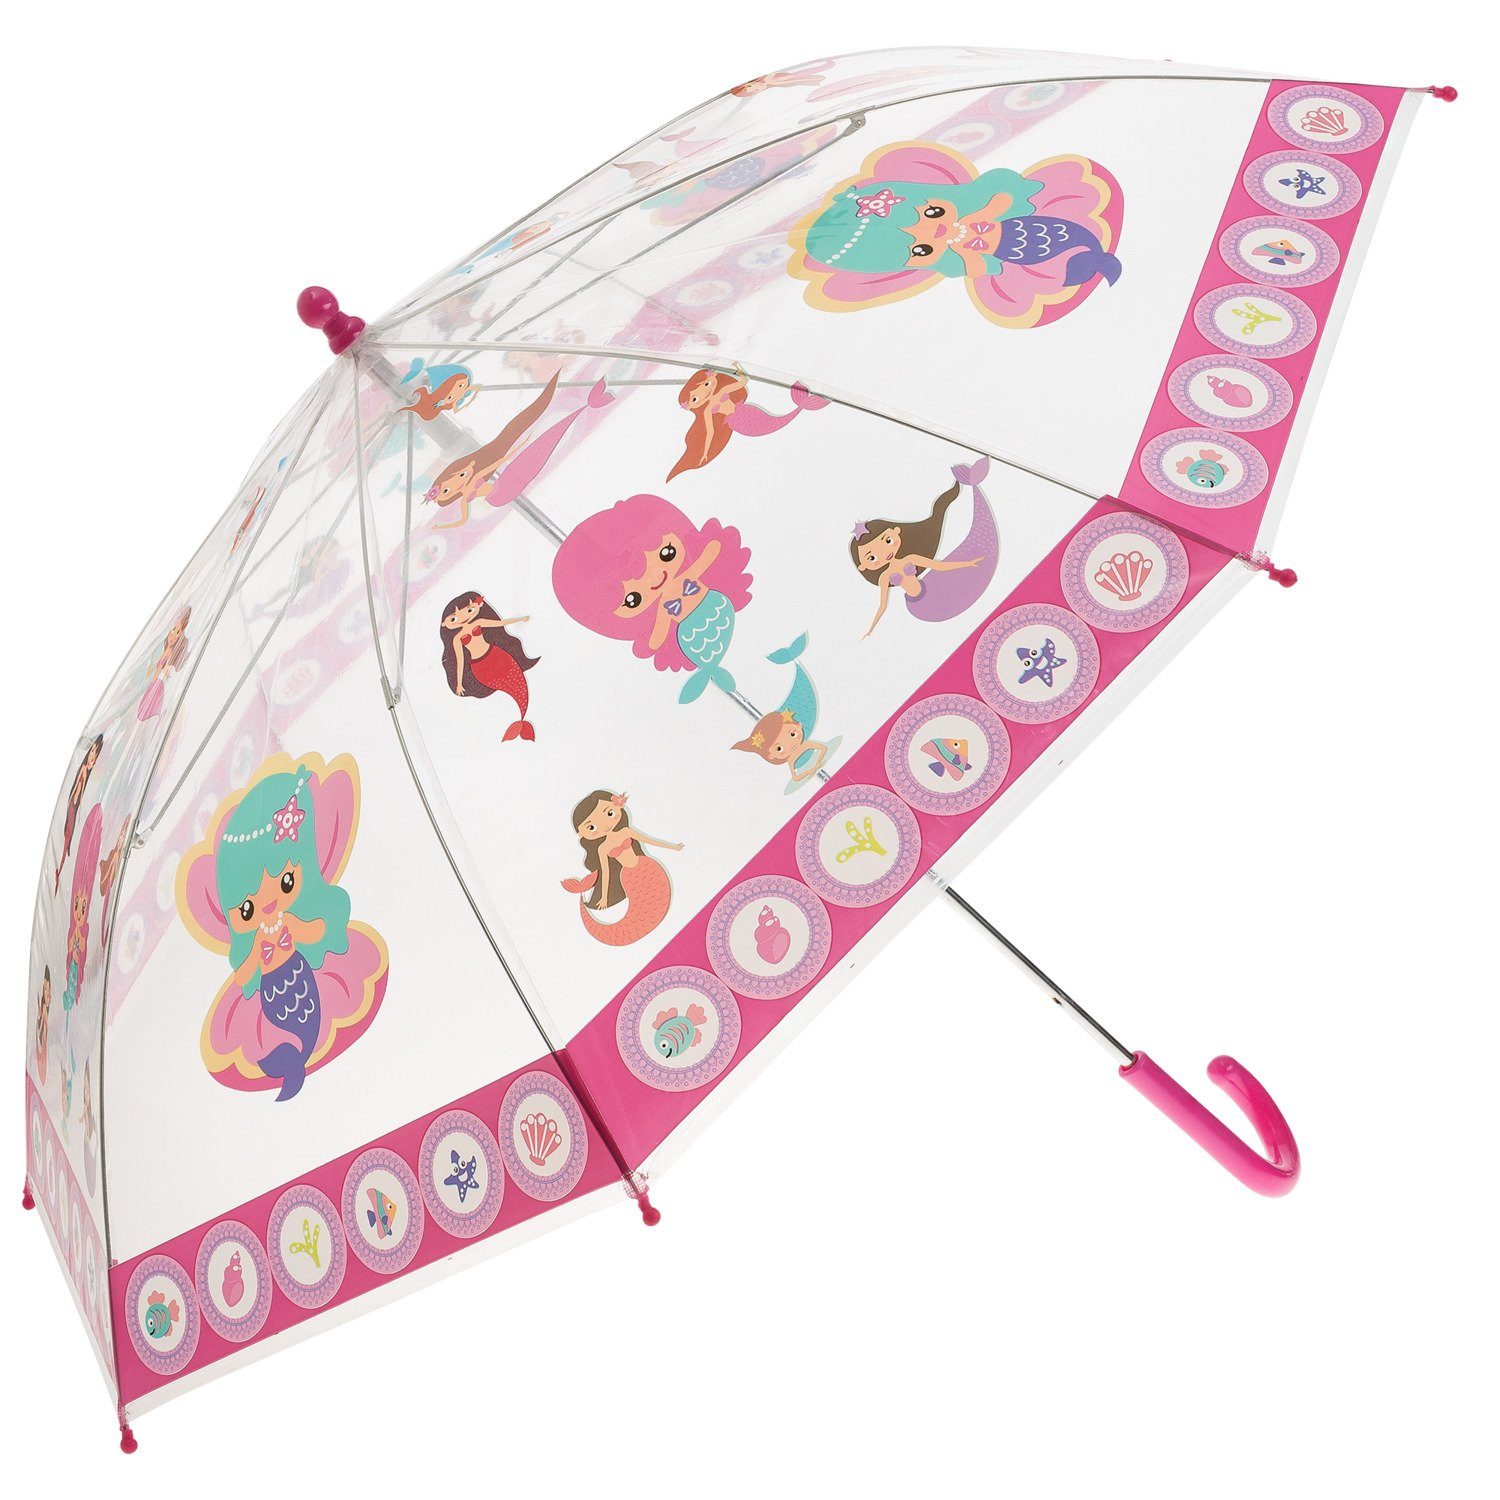 Idena Taschenregenschirm Idena 50048 - mit zauberhaftem Mädchen, Meerjung Kinderregenschirm für